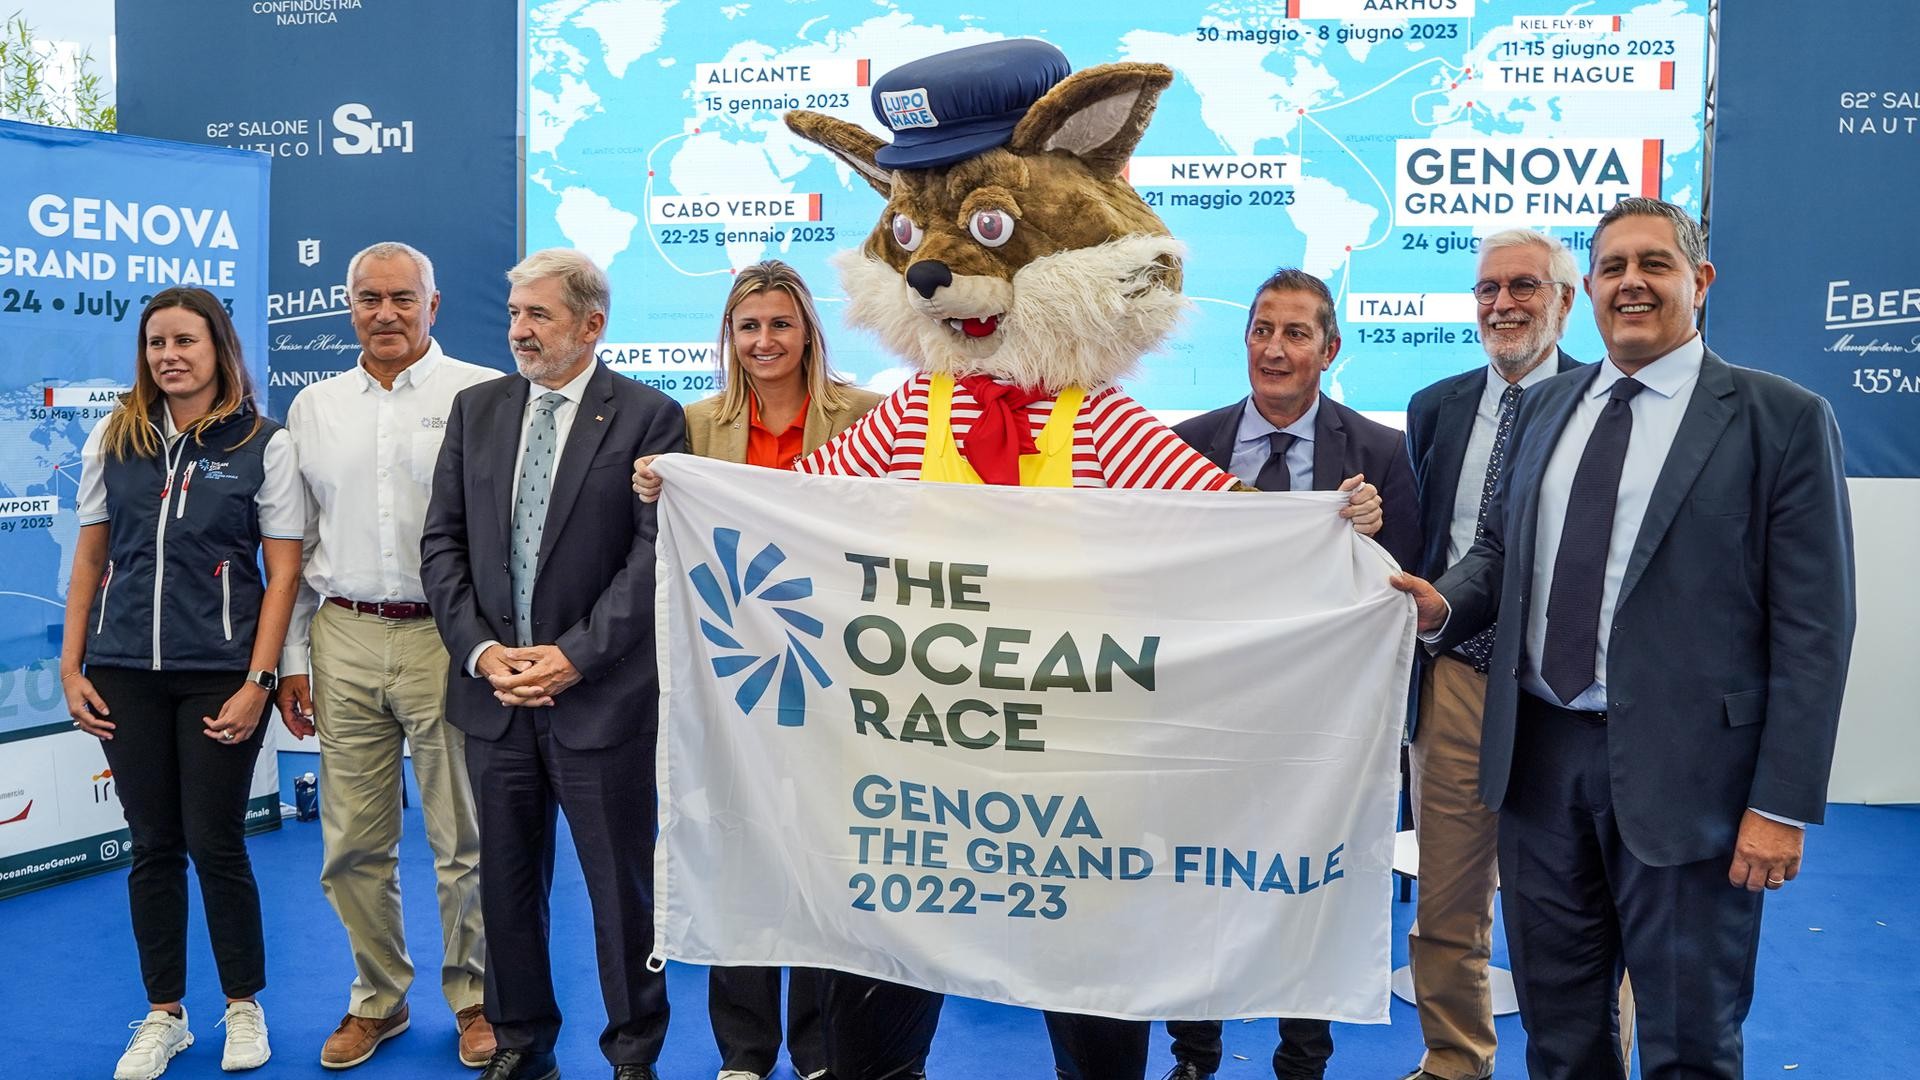 Genova nel mondo con The Ocean Race in attesa del “Grand Finale”